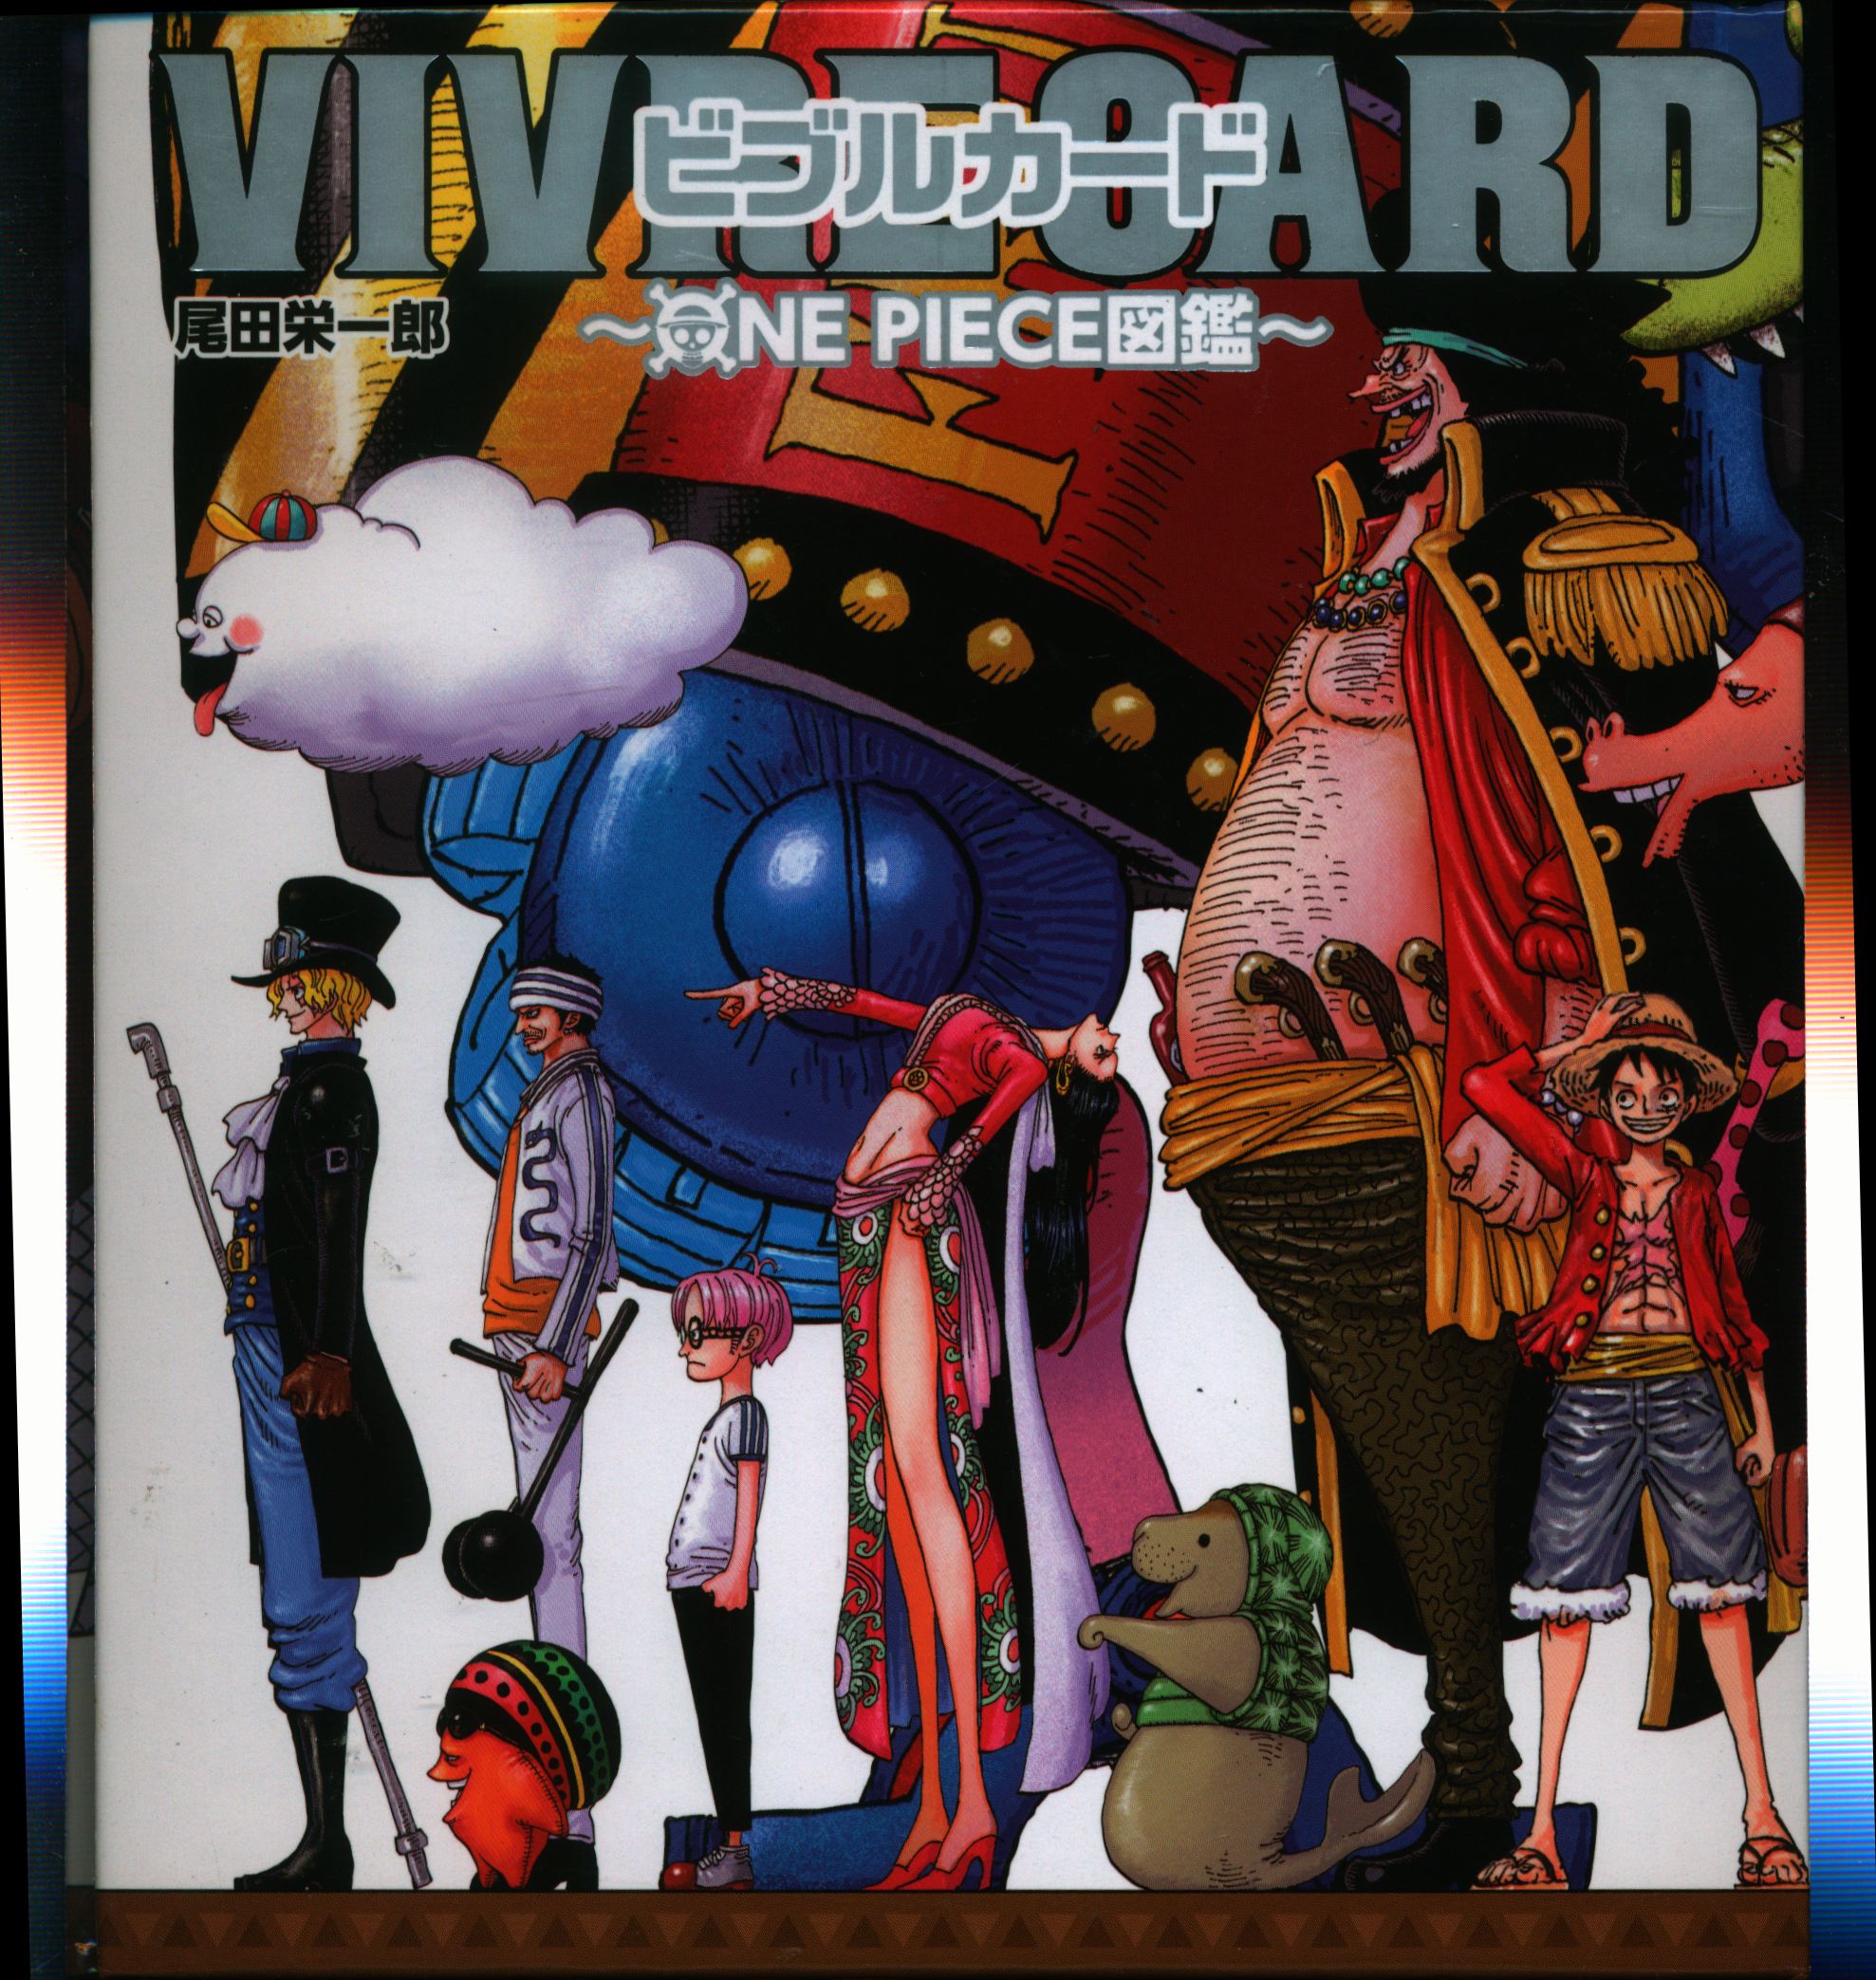 集英社 Vivre Card One Piece図鑑 ビブルカード ワンピース図鑑 Vivre Card One Piece図鑑 Starter Set Vol2 まんだらけ Mandarake